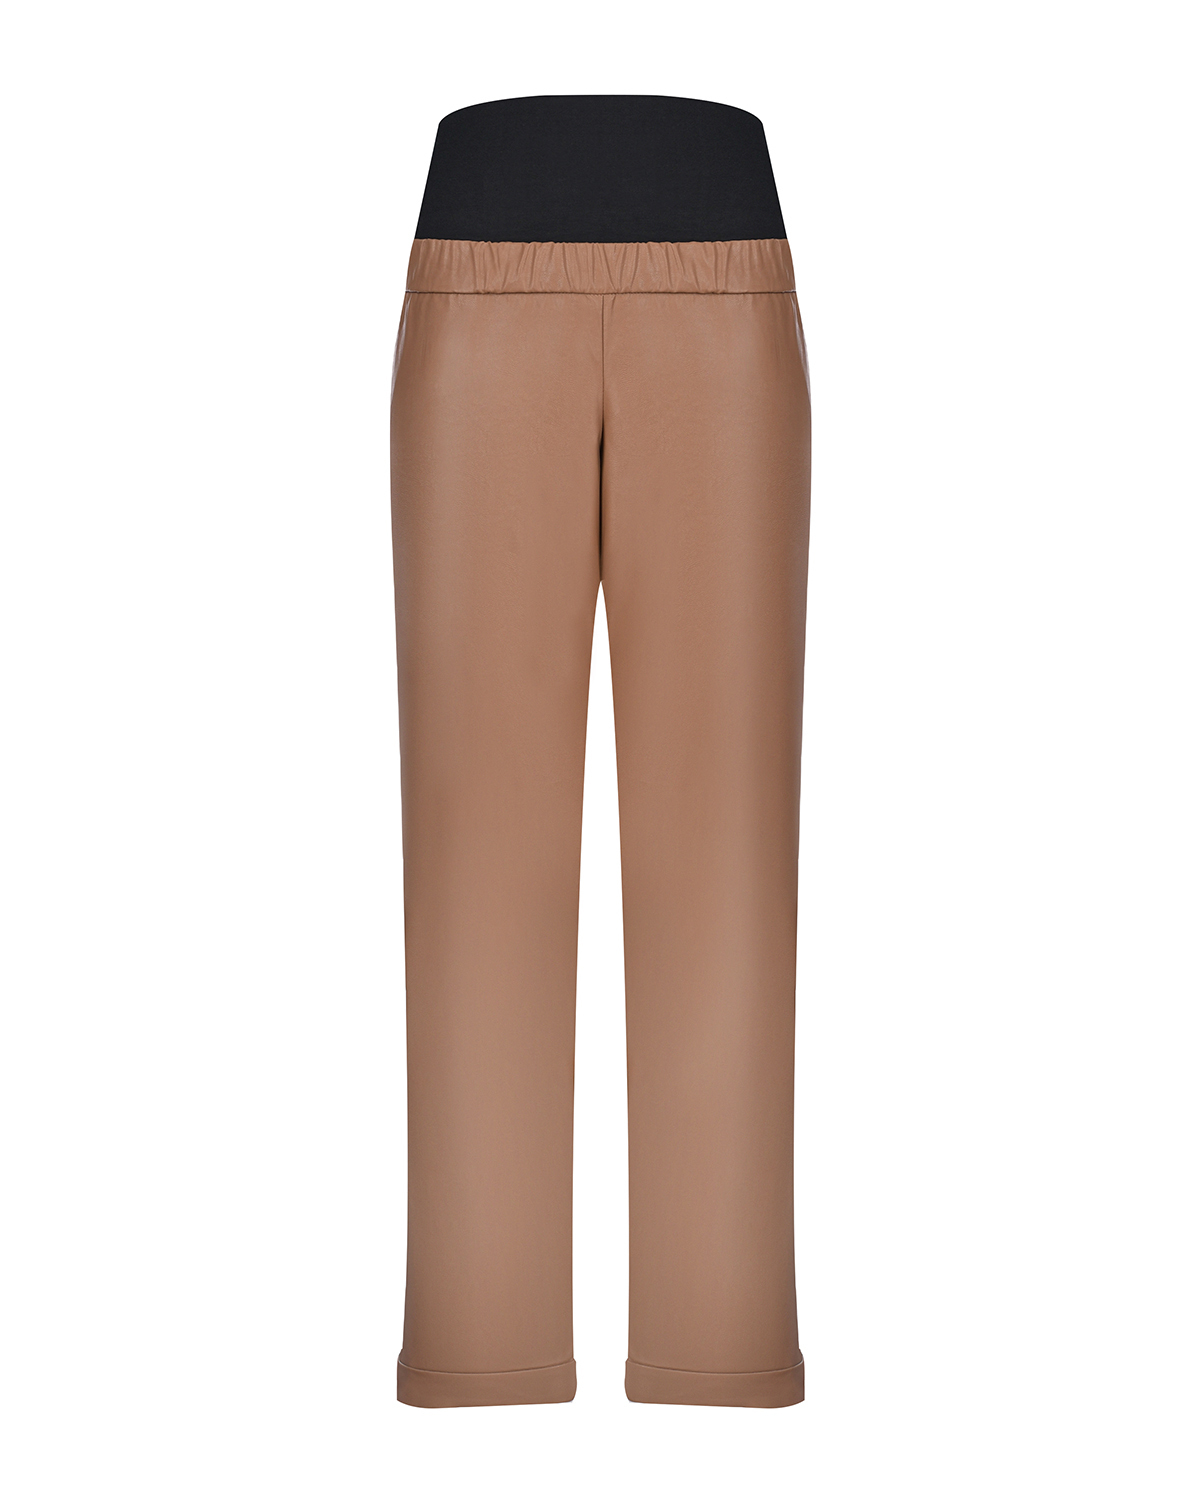 Коричневые брюки из эко-кожи для беременных Pietro Brunelli, размер 38, цвет коричневый